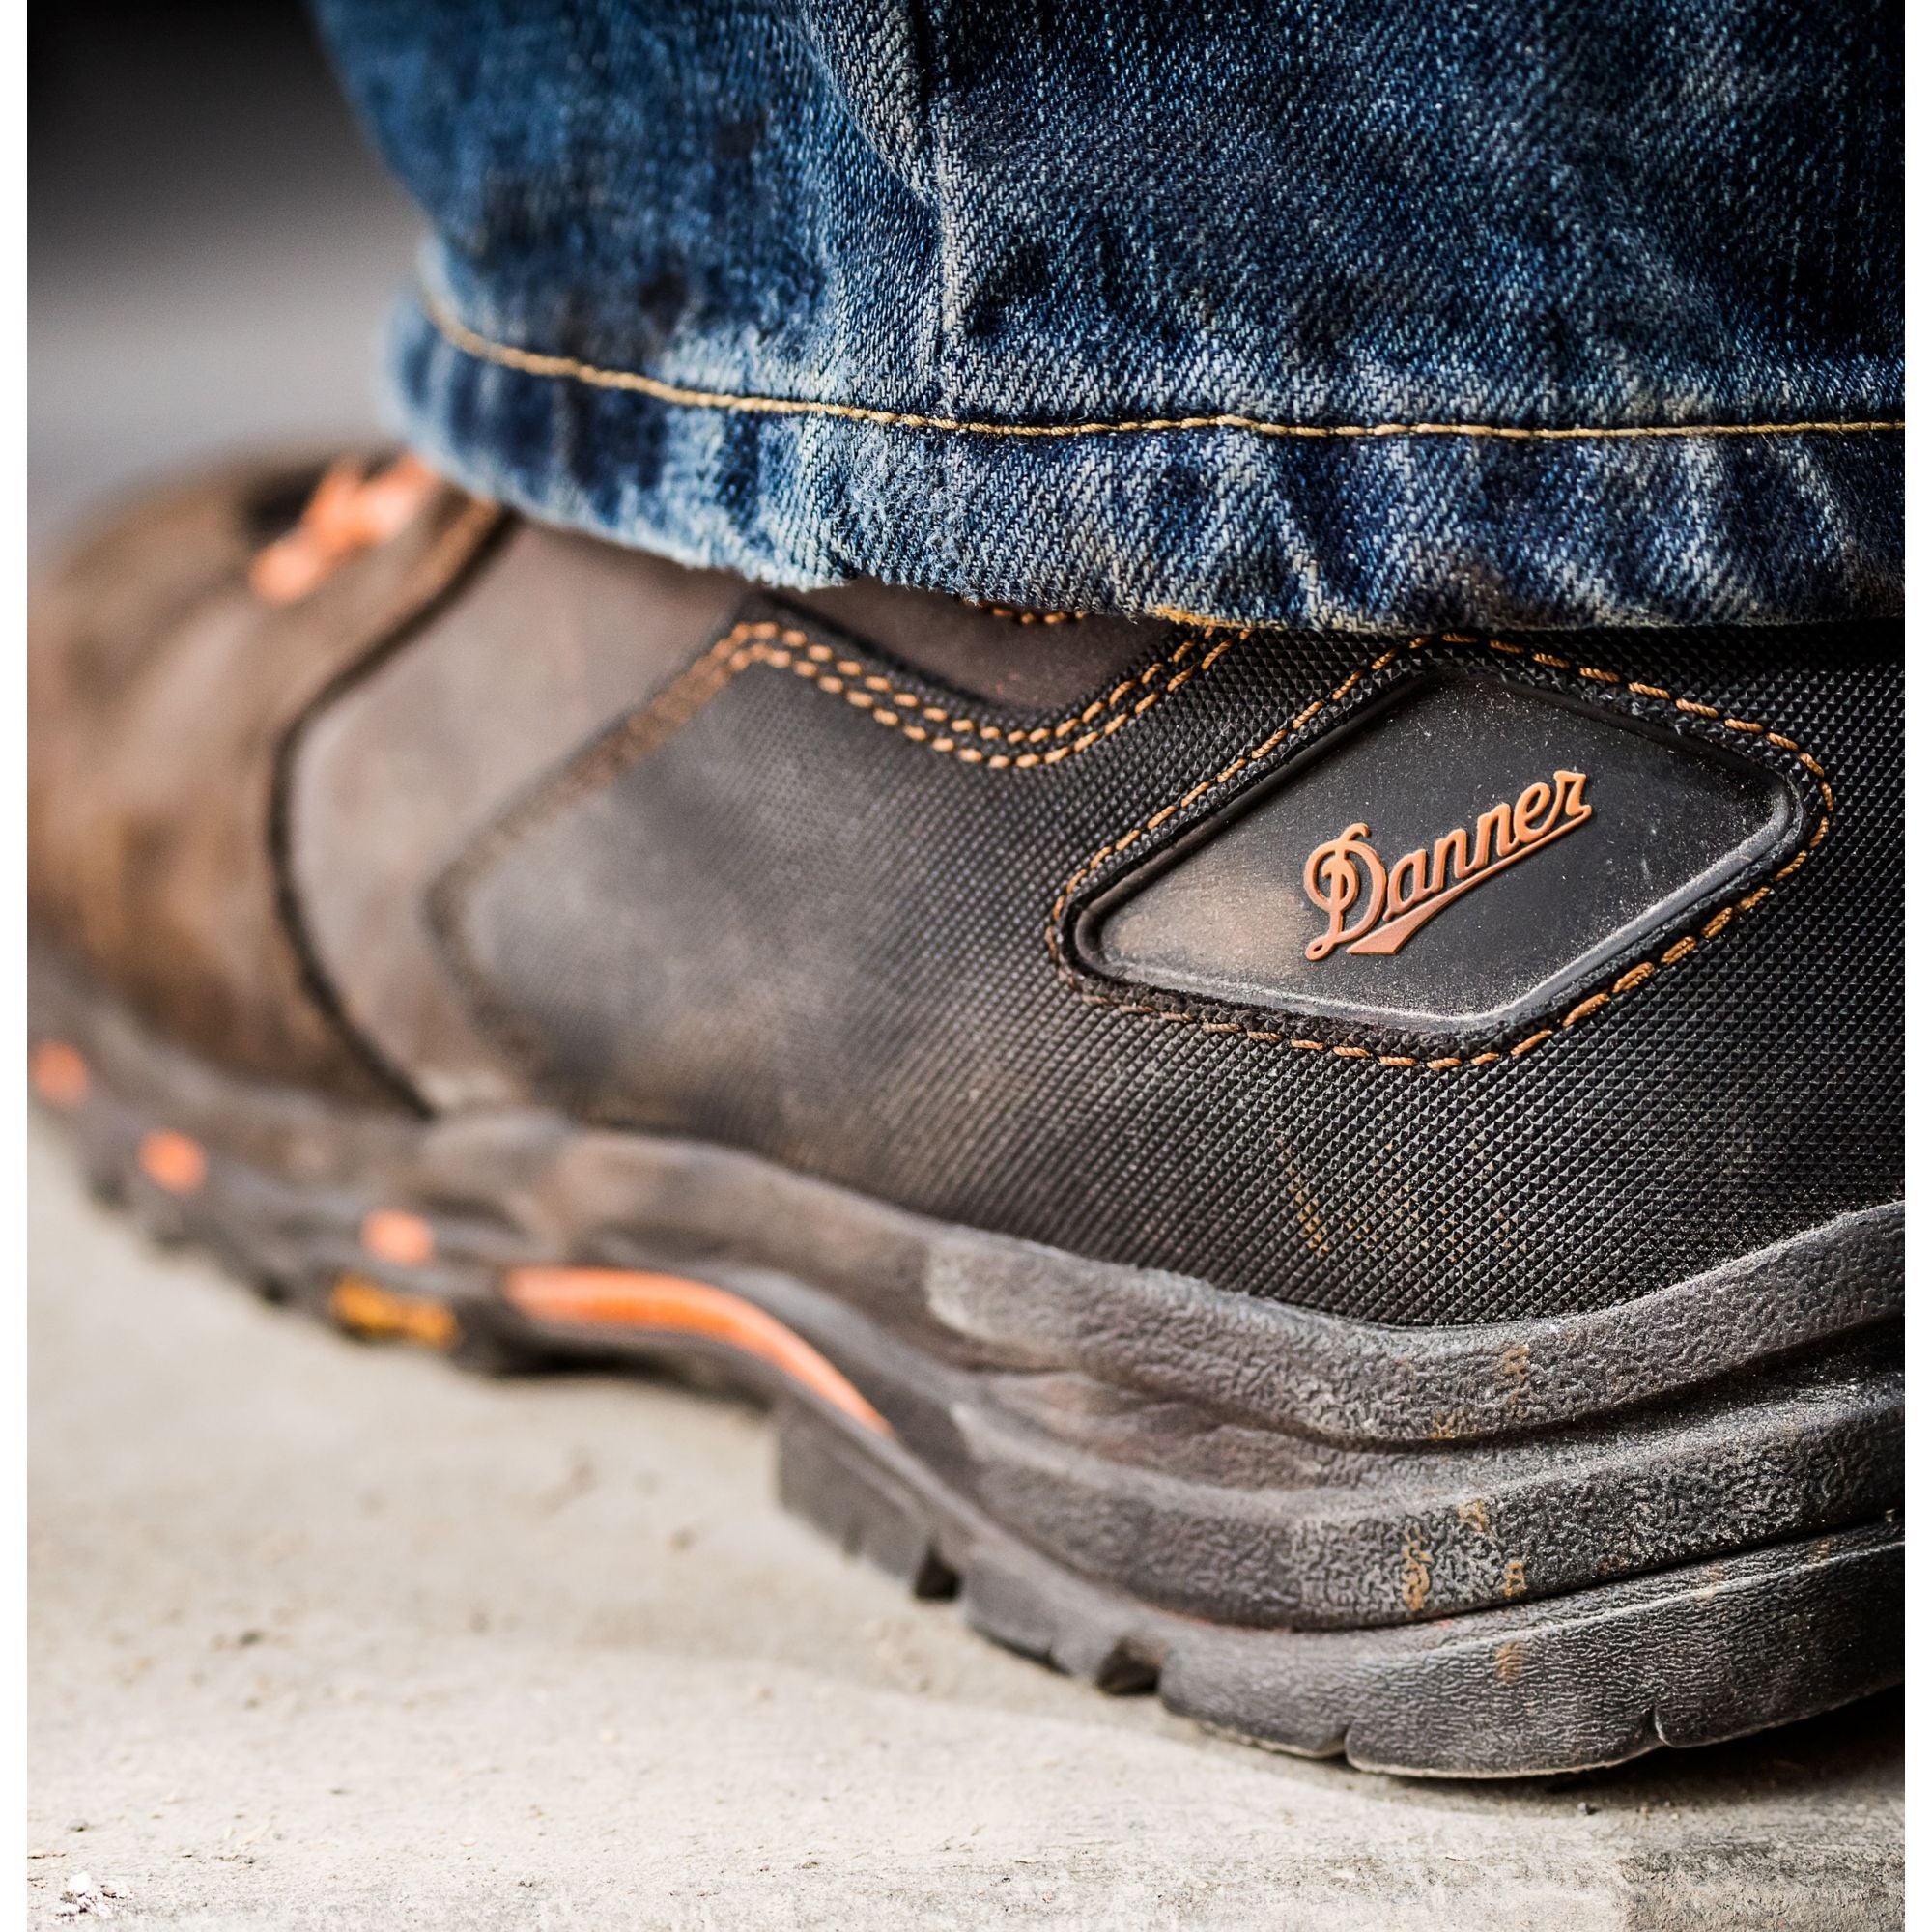 Danner Men's Vicious 4.5" Comp Toe WP Work Boot - Brown - 13860  - Overlook Boots